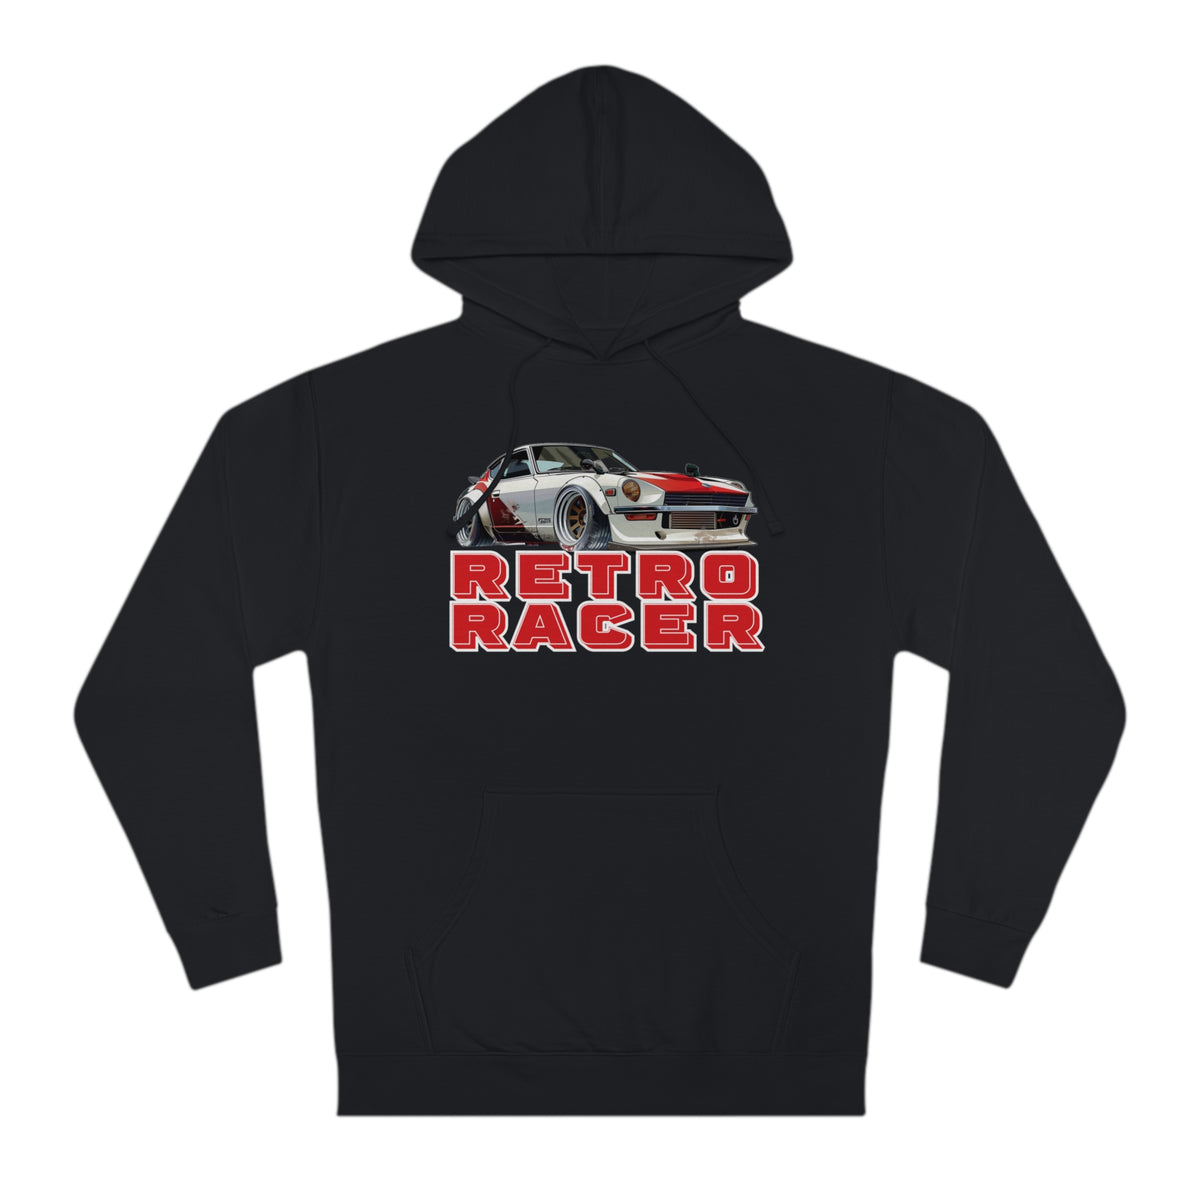 "Retro Racer" JDM-Inspired Hoodie/Hooded Sweatshirt